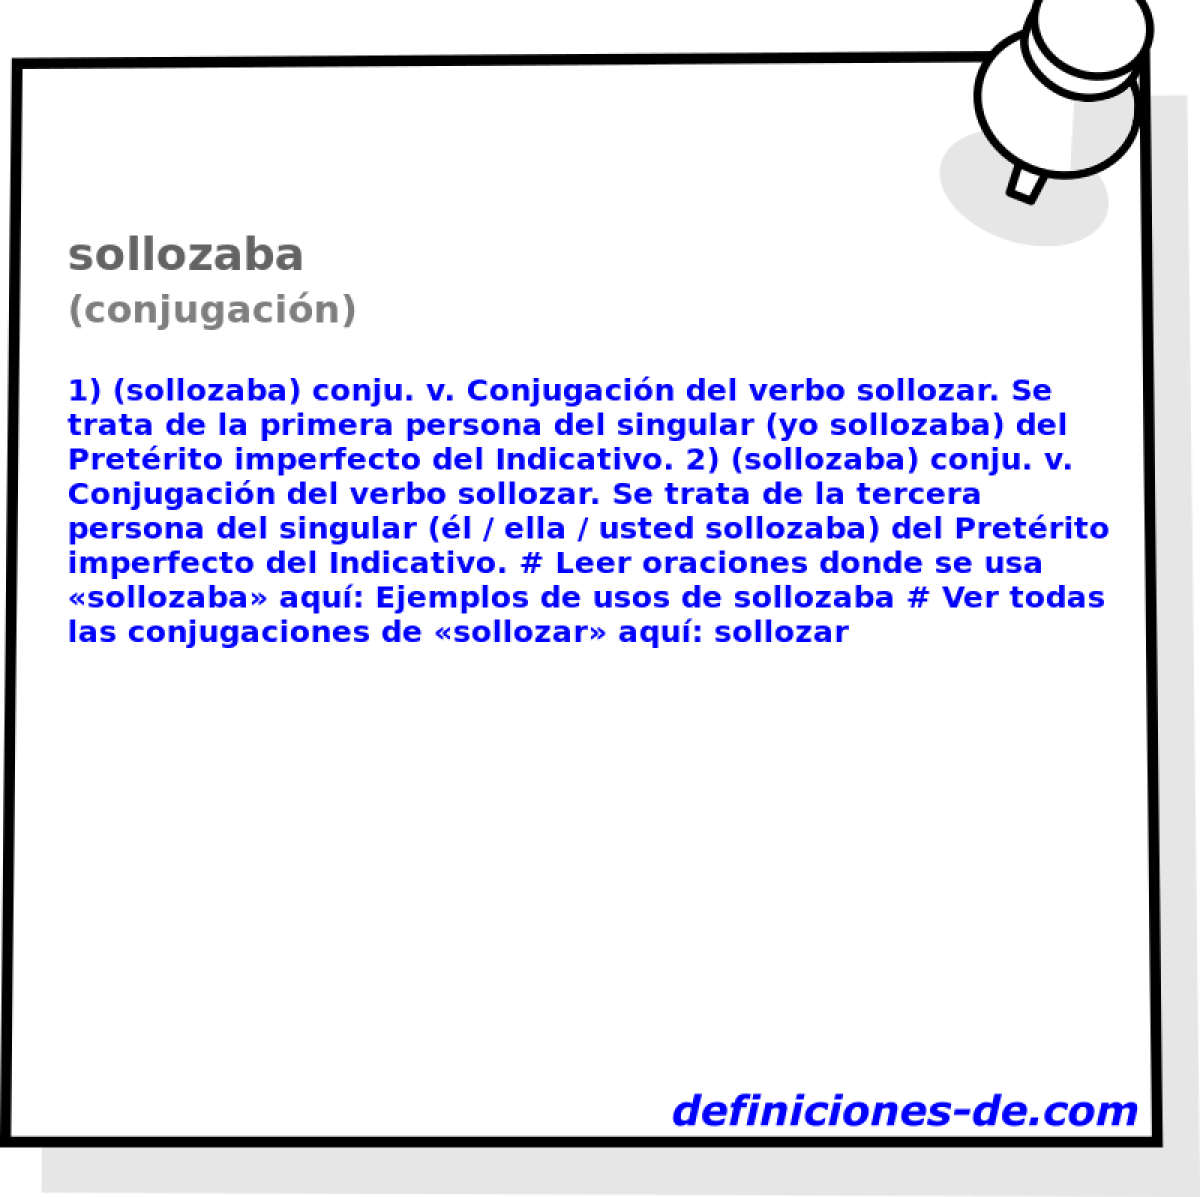 sollozaba (conjugacin)